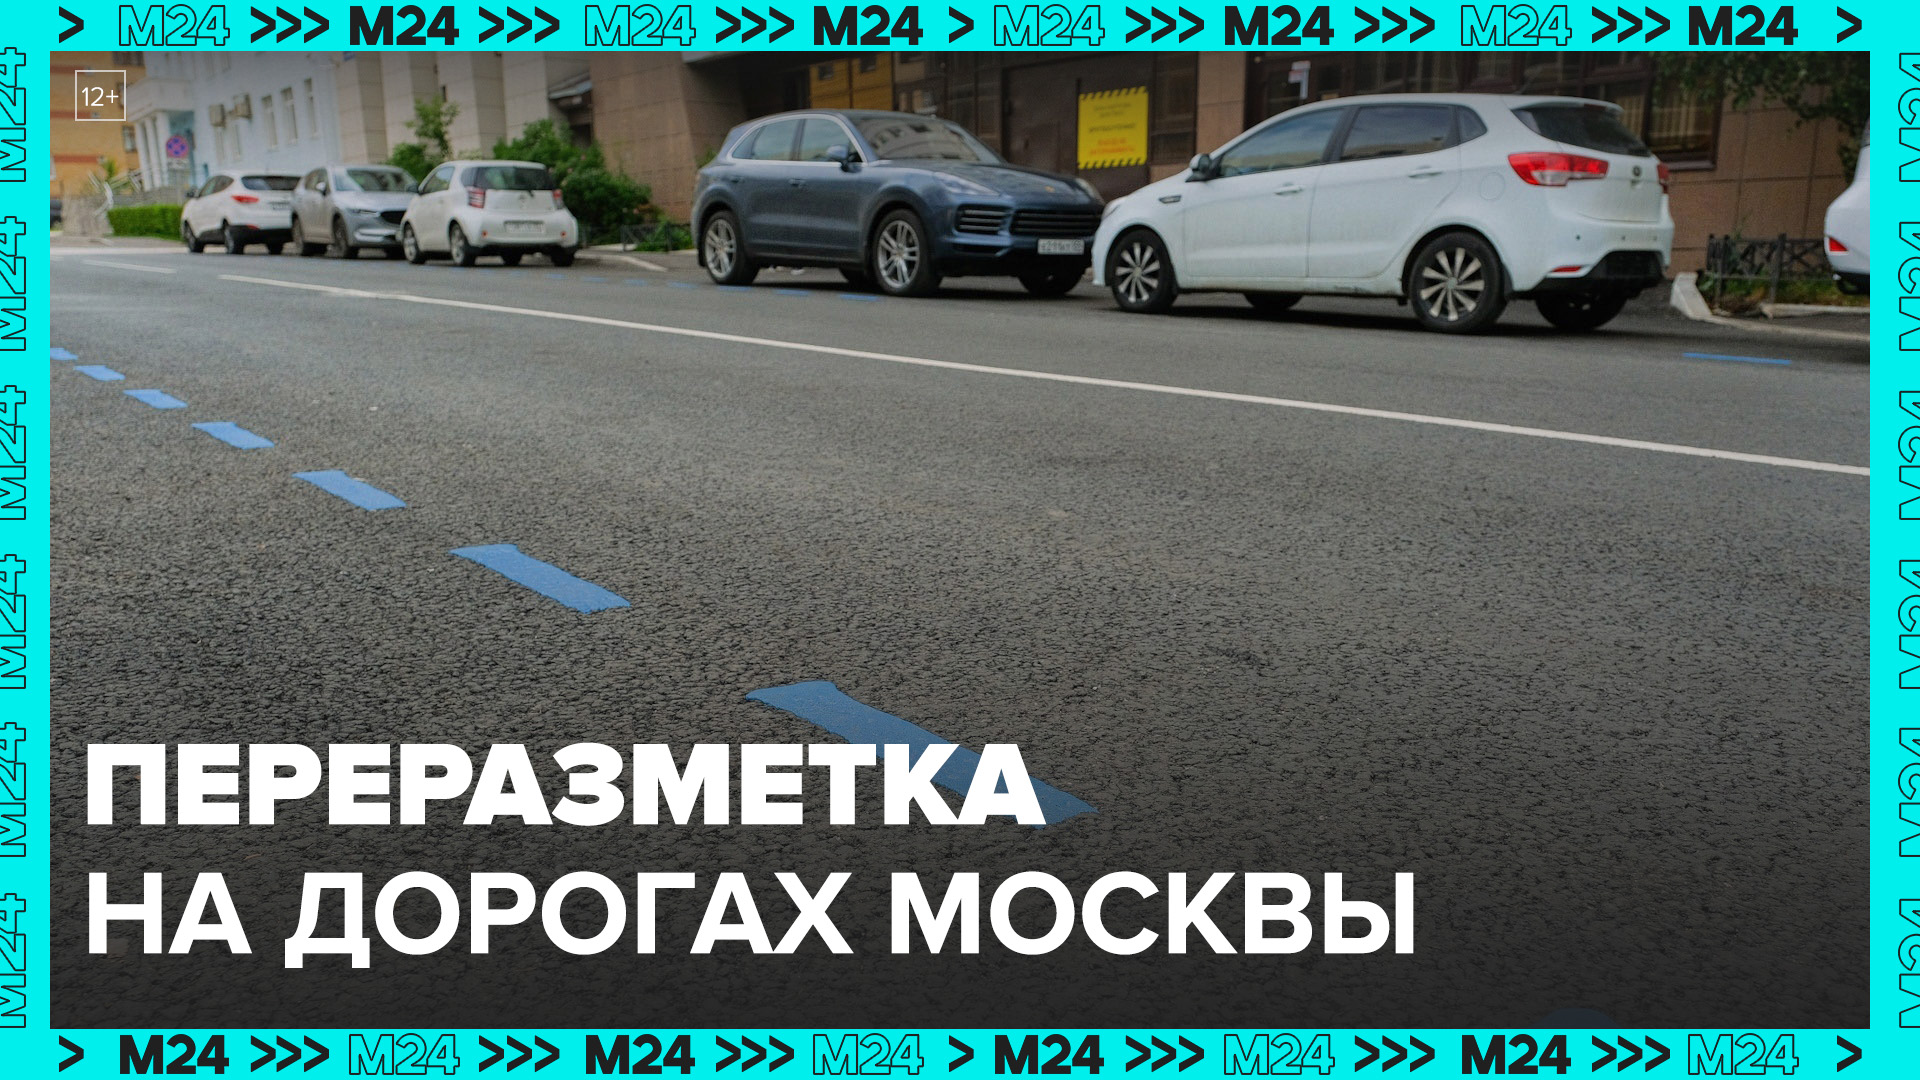 Собянин рассказал, как переразметка позволяет улучшить движение на дорогах Москвы - Москва 24